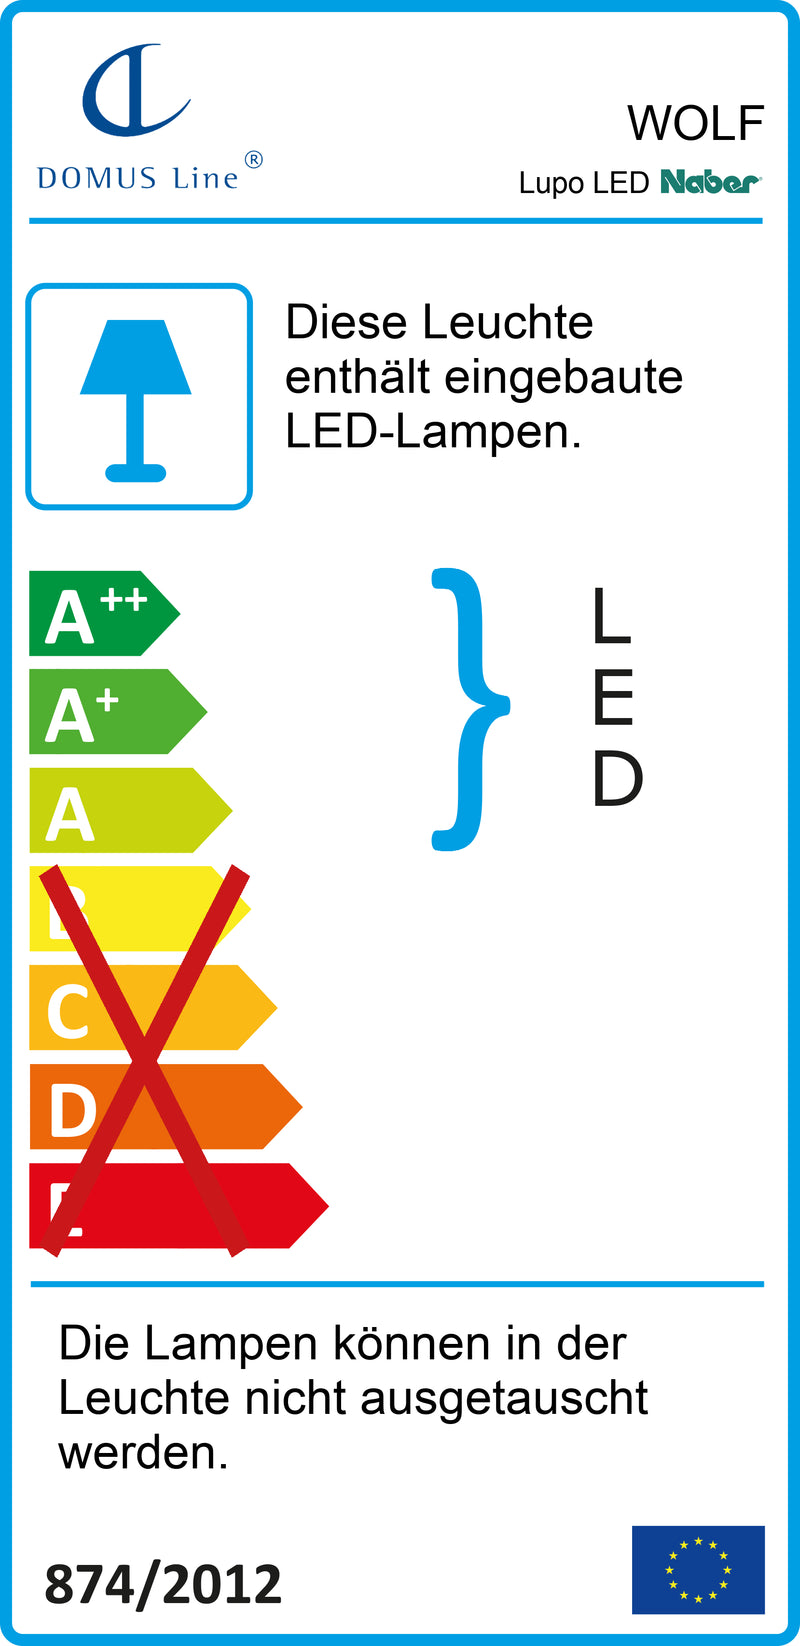 E-Label zu Zeichnung zu Lupo LED als Variante L 600 mm, 10 W, alufarbig von Naber GmbH in der Kategorie Lichttechnik in Österreich auf conceptshop.at